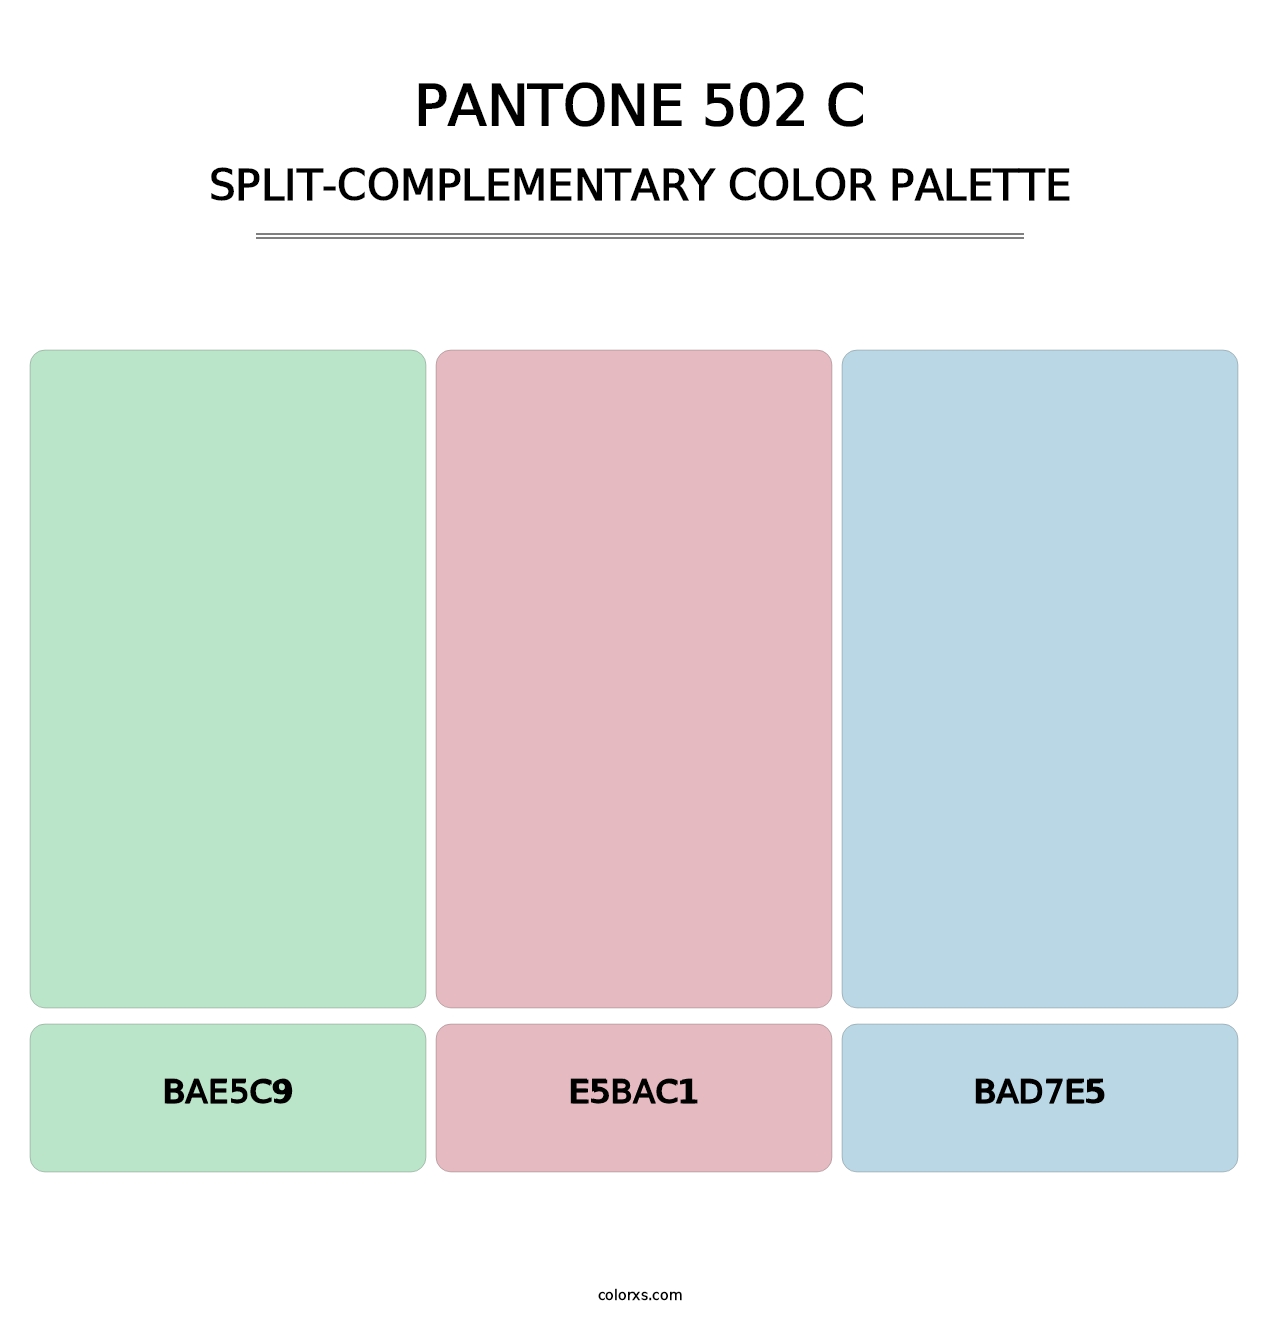 PANTONE 502 C - Split-Complementary Color Palette